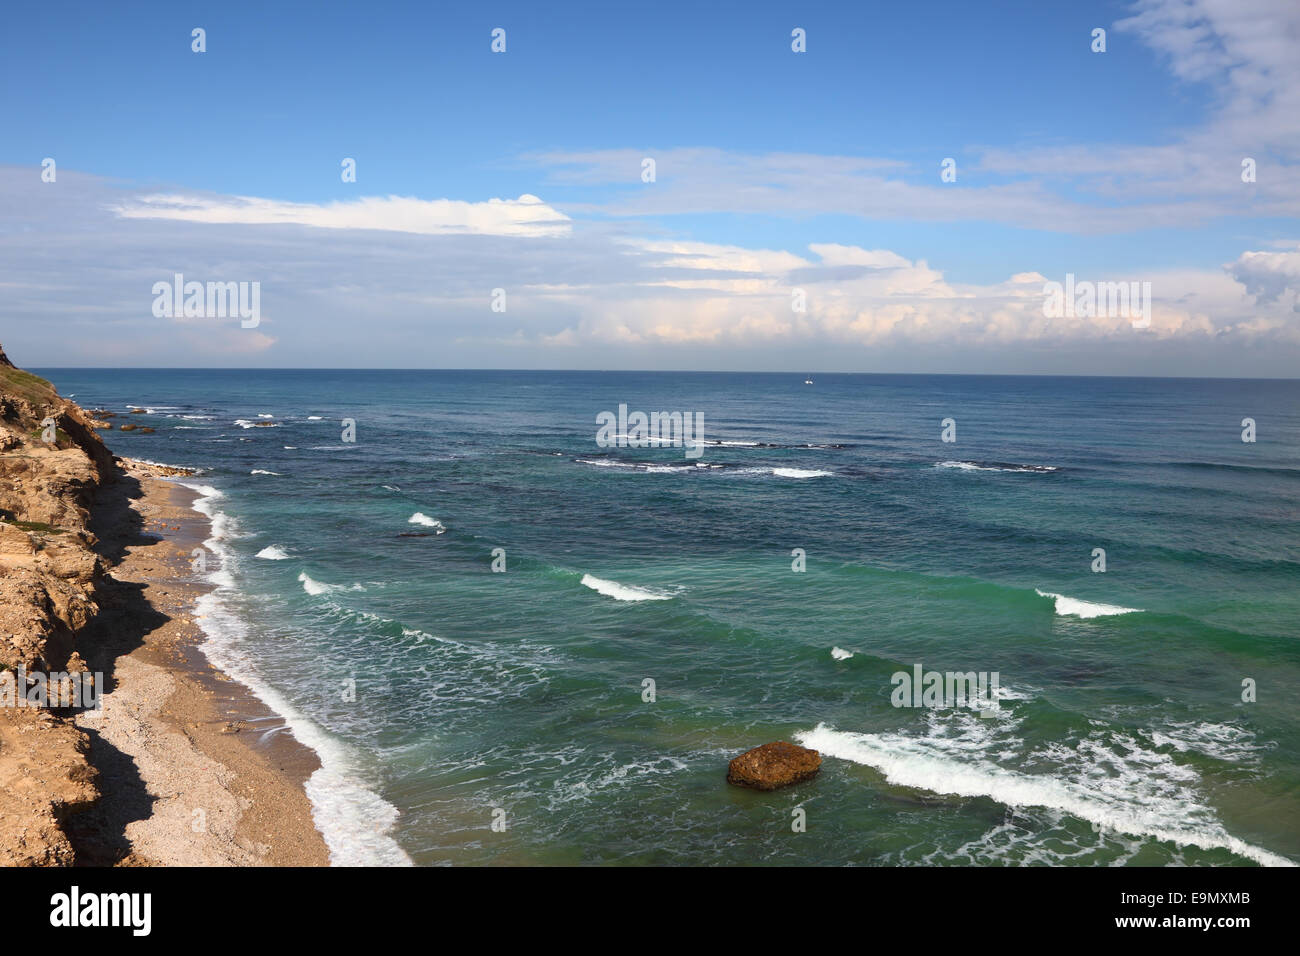 La costa de la mar en buenas condiciones climáticas Foto de stock